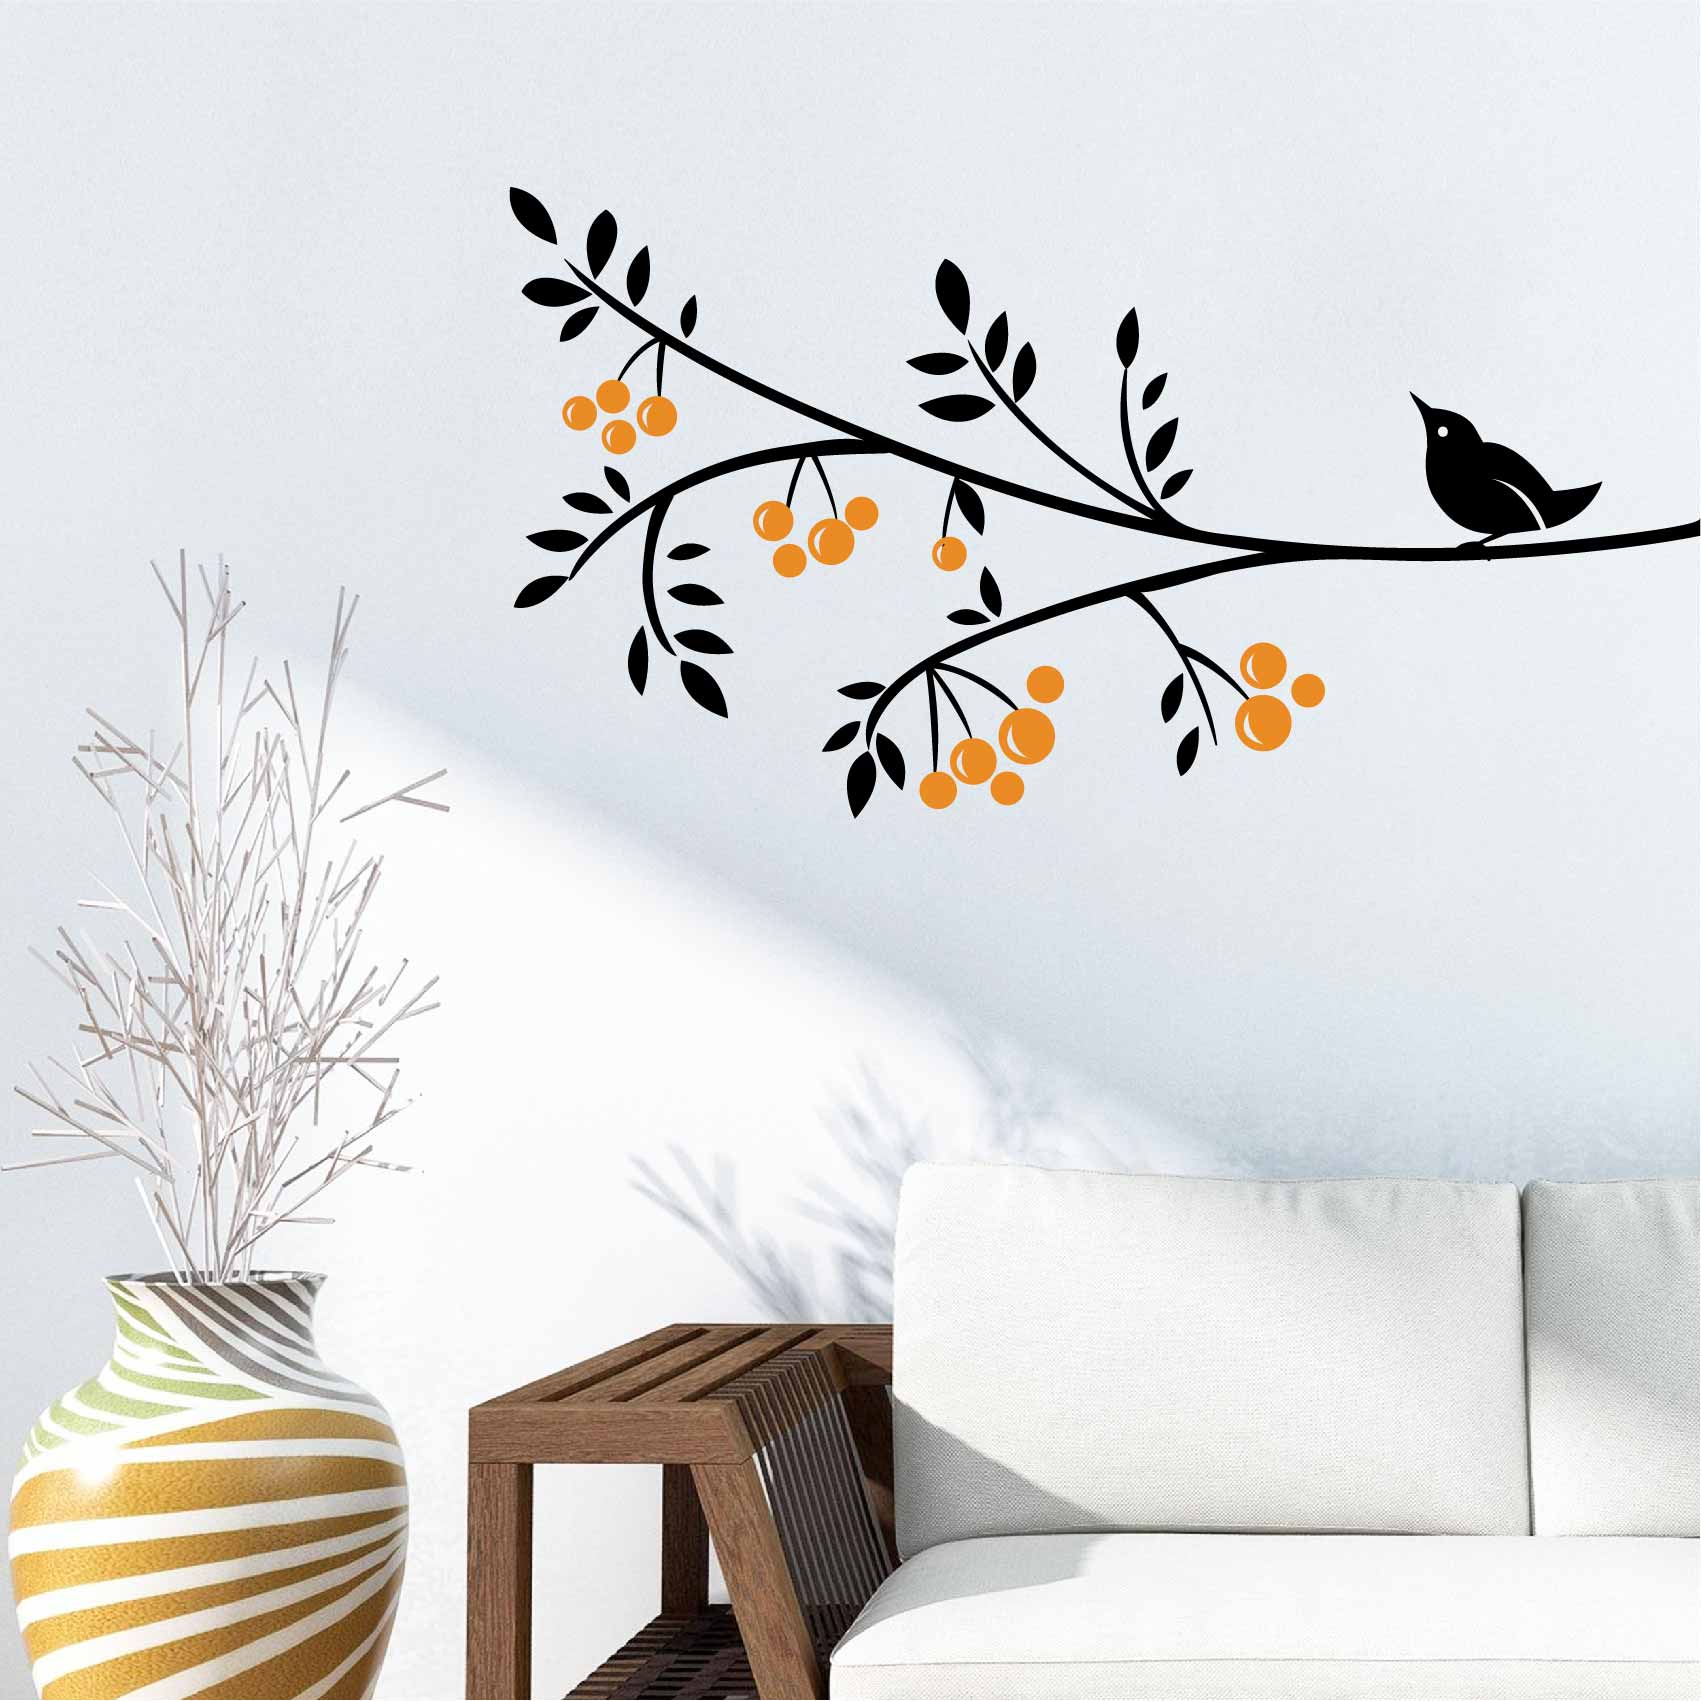 Stickers Muraux oiseau branche - Autocollant muraux et deco